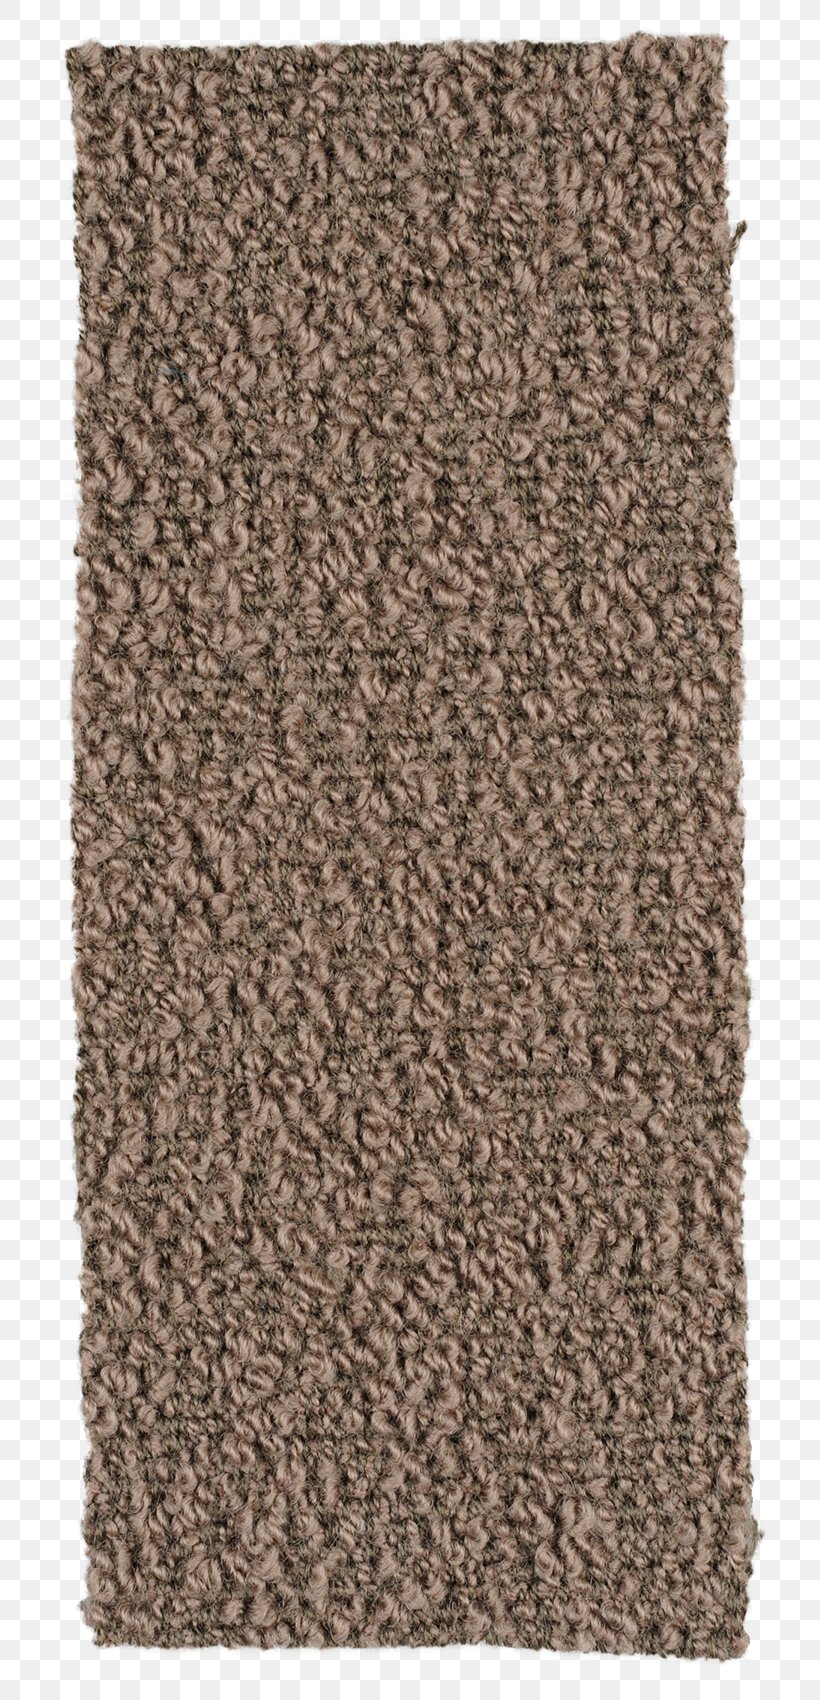 Tapa Cloth Birch Bark Carpet, PNG, 750x1700px, Tapa Cloth.